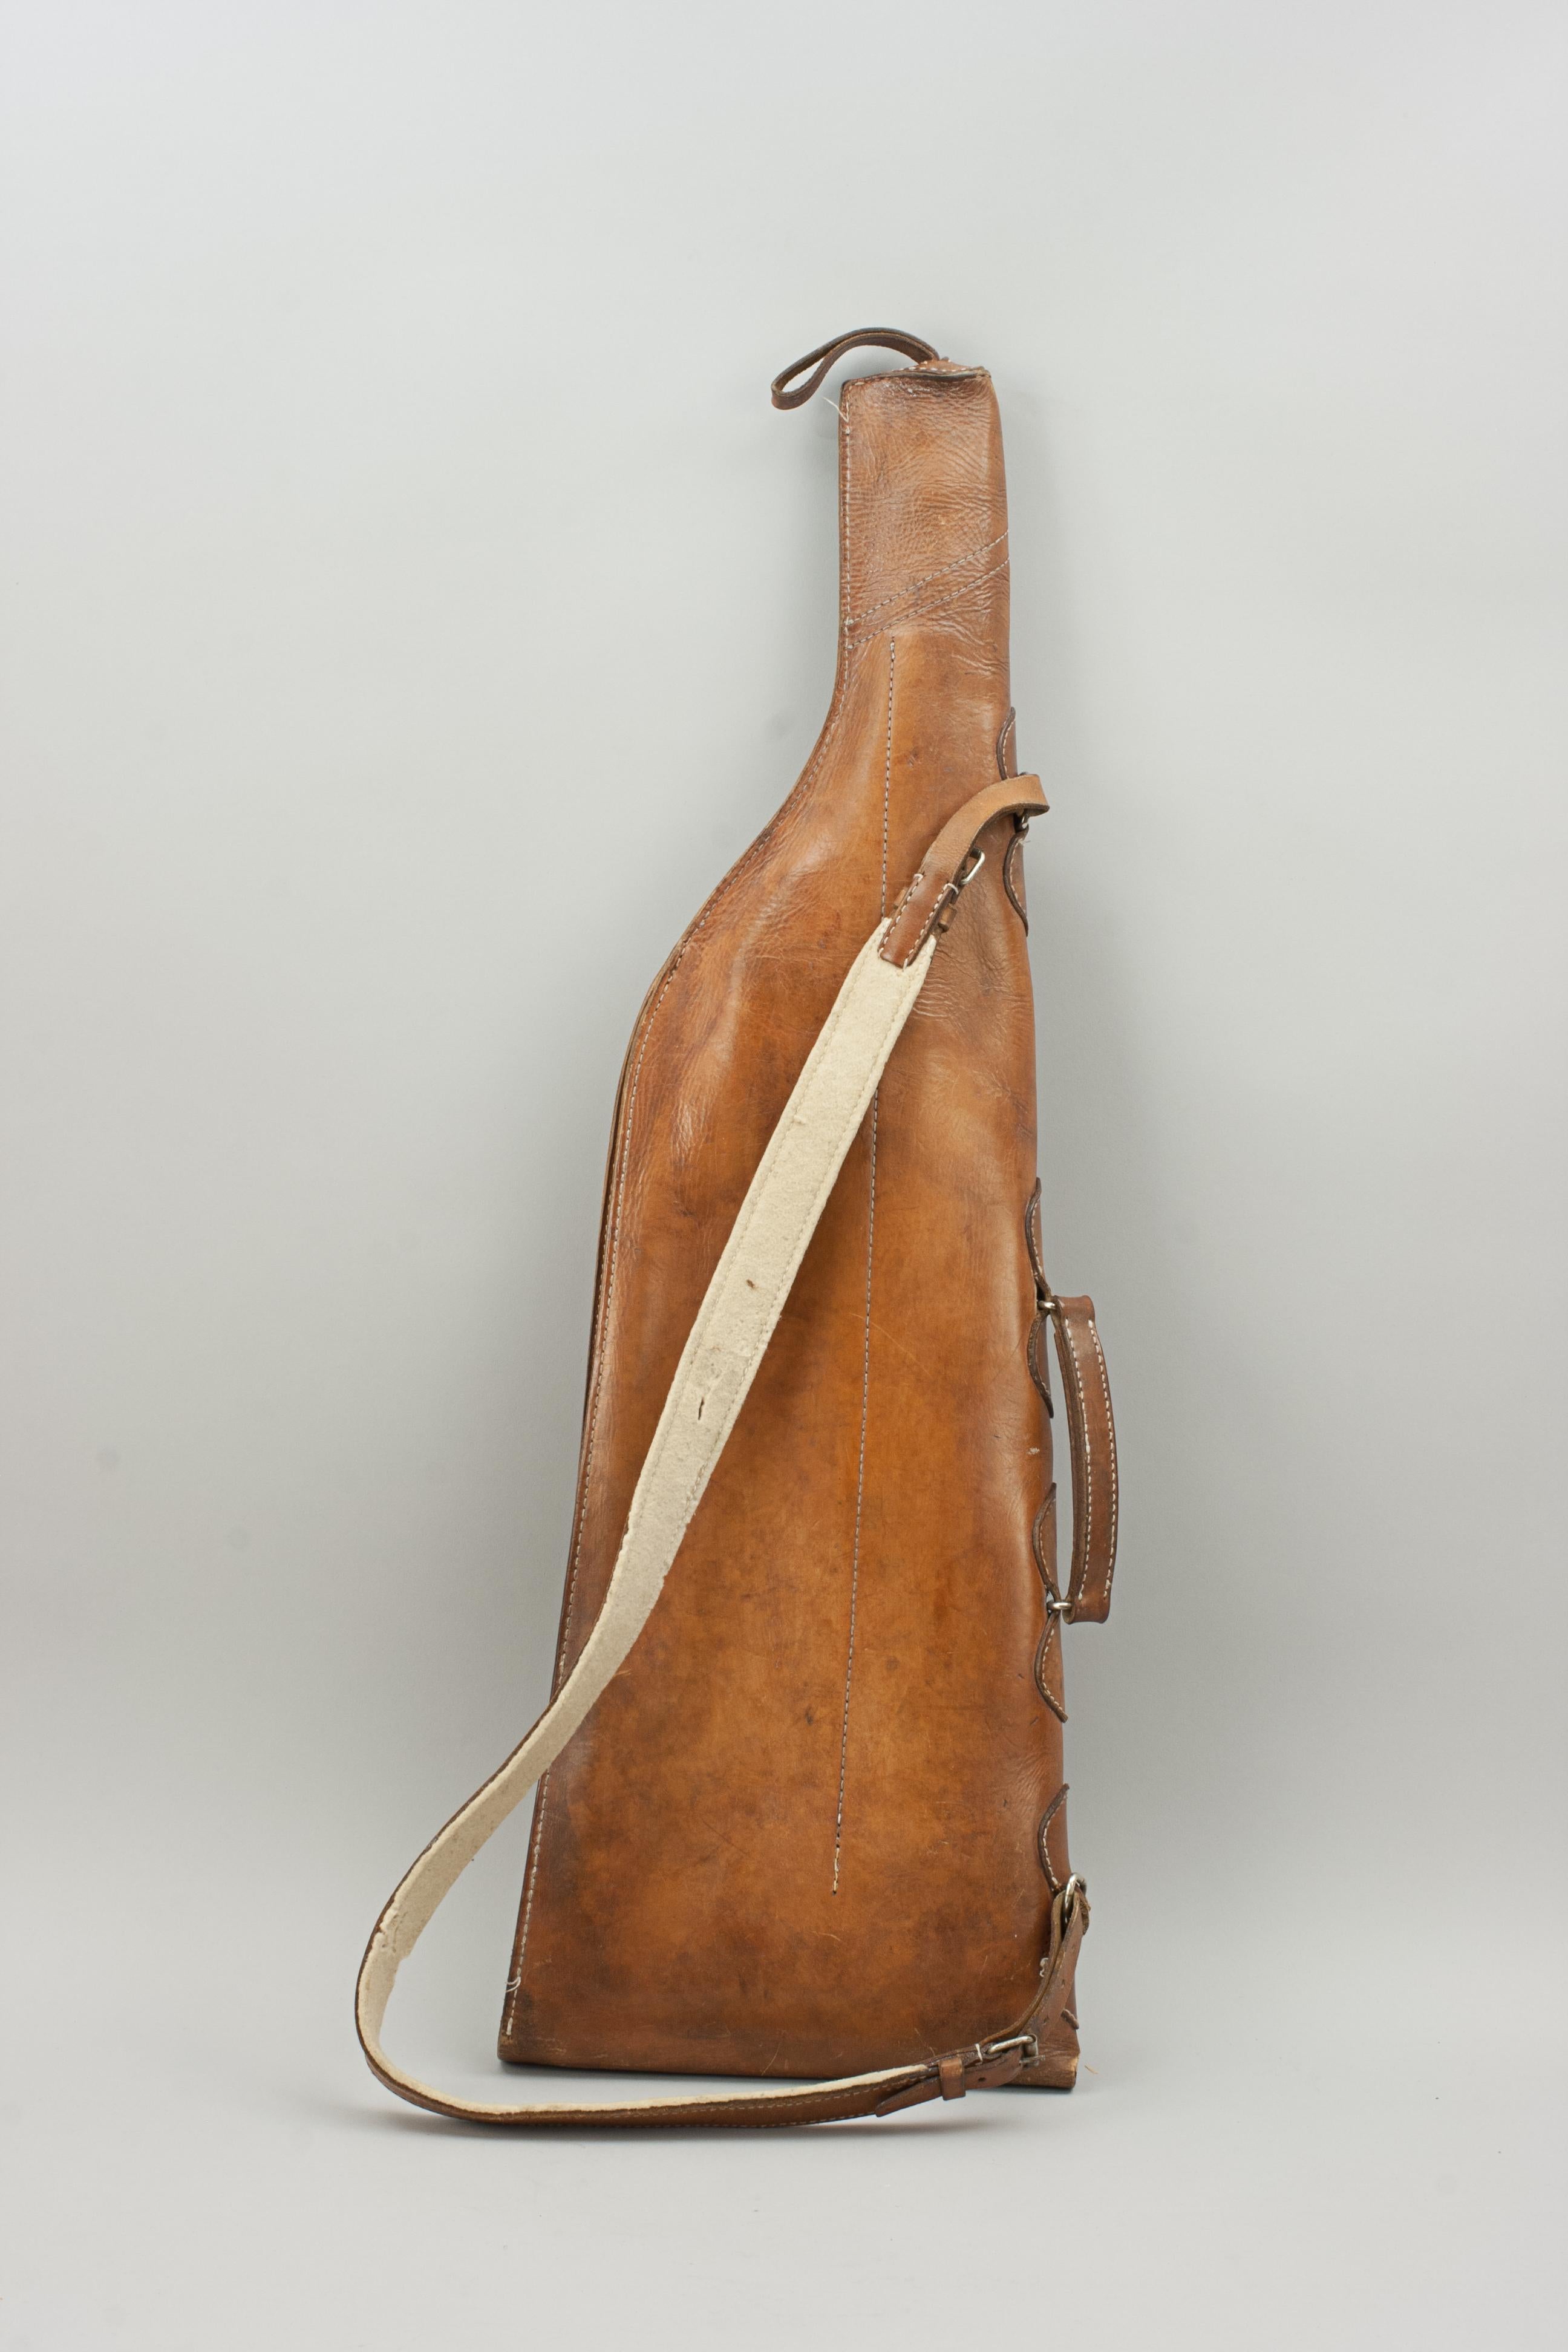 British Antique Leather Gun Case, Leg of Mutton